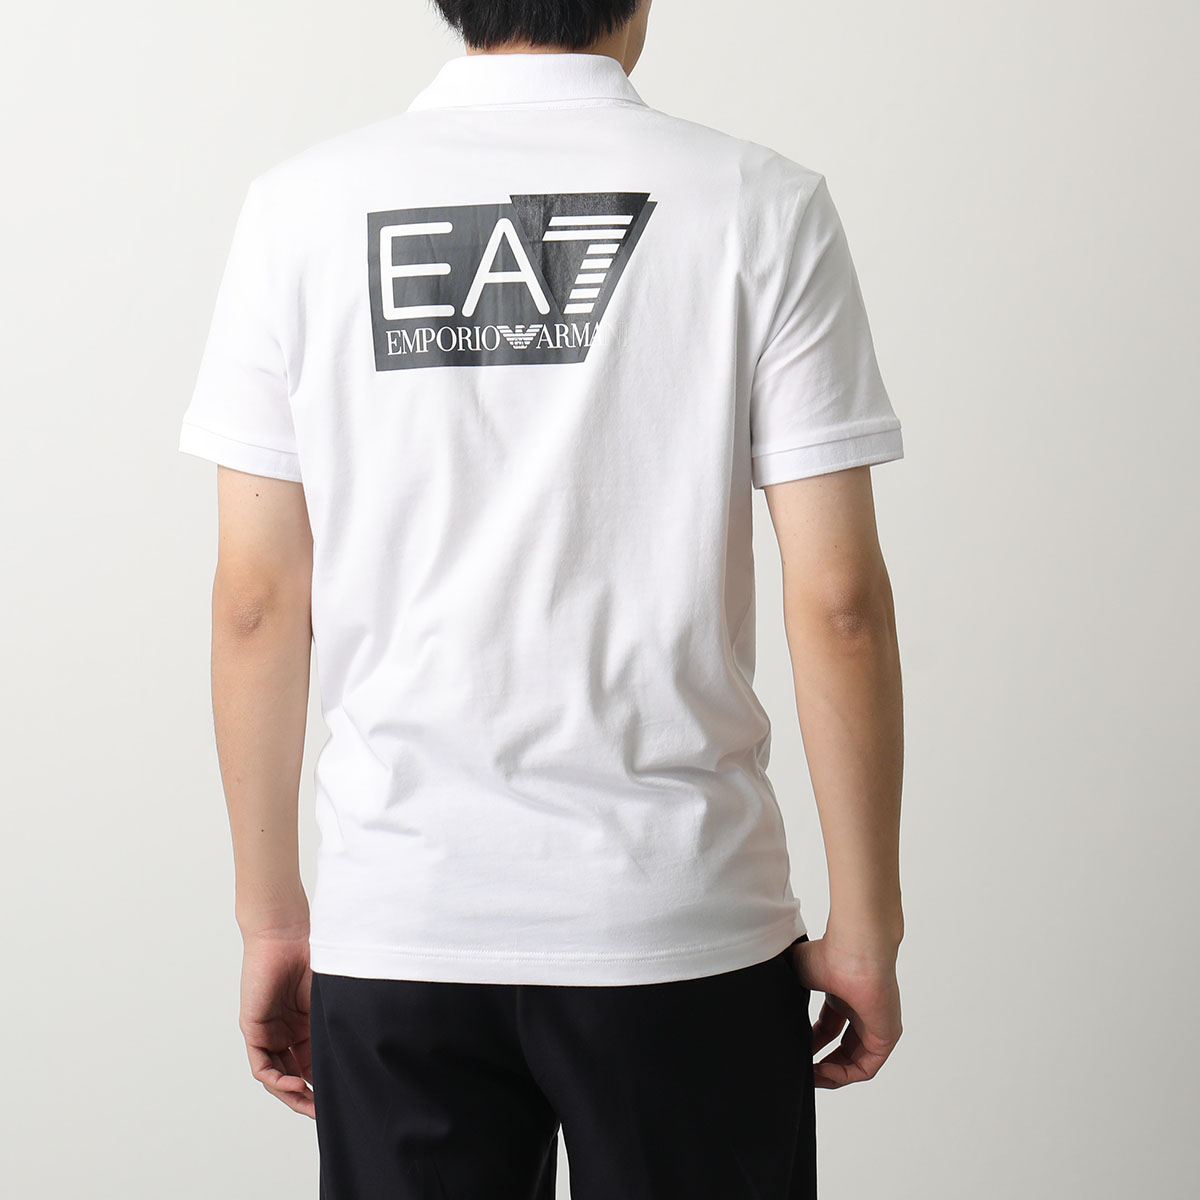 EA7 EMPORIO ARMANI エアセッテ エンポリオアルマーニ ポロシャツ 3DPF16 PJ03Z メンズ 半袖 カットソー ロゴ  ストレッチ カラー2色